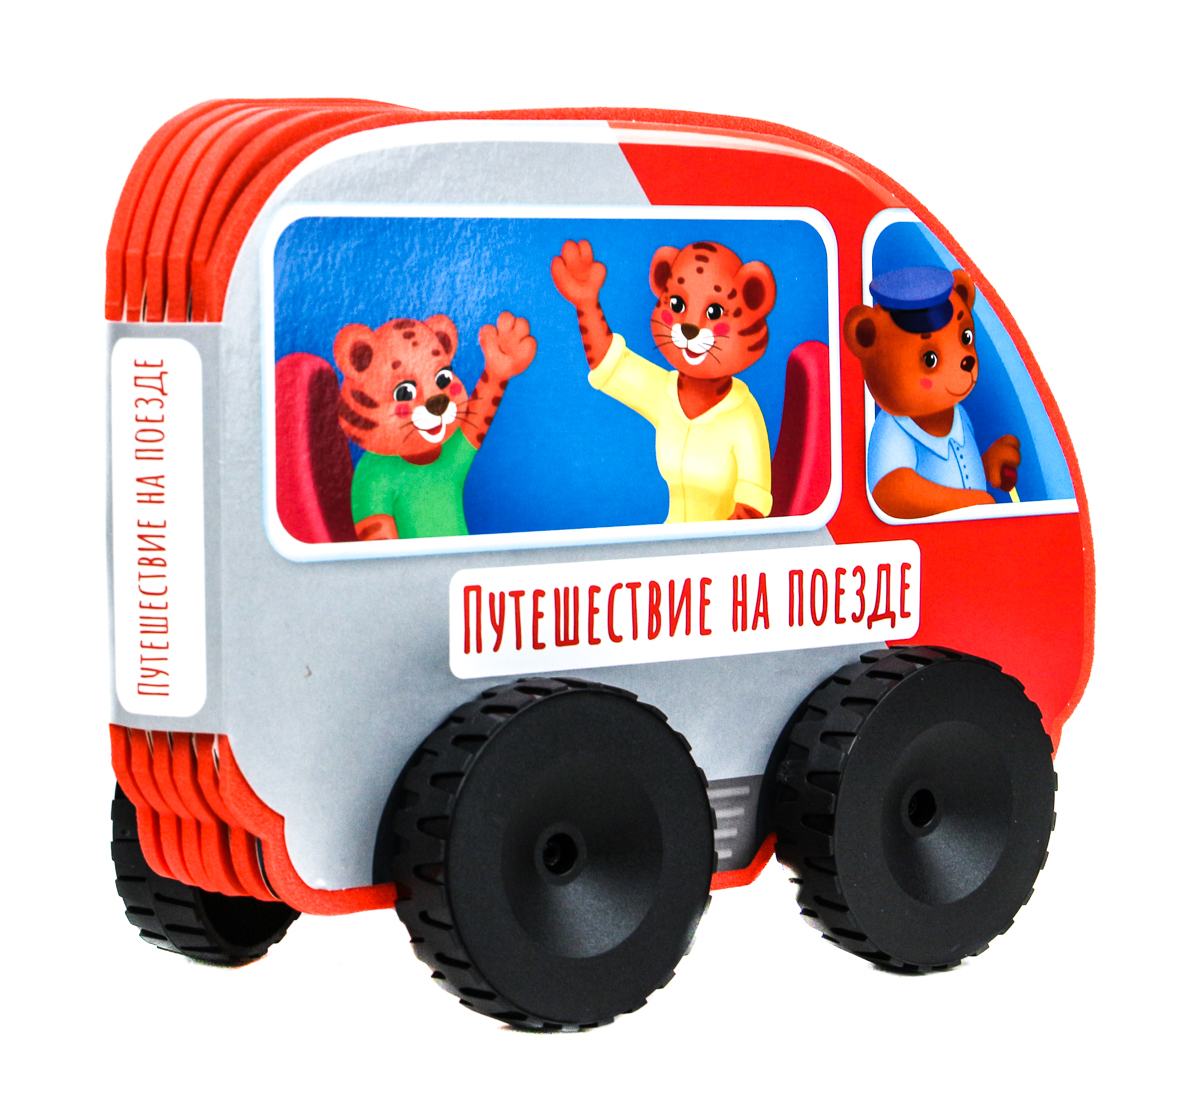 Путешествие на поезде книжки игрушки красная машинка 8 книжек